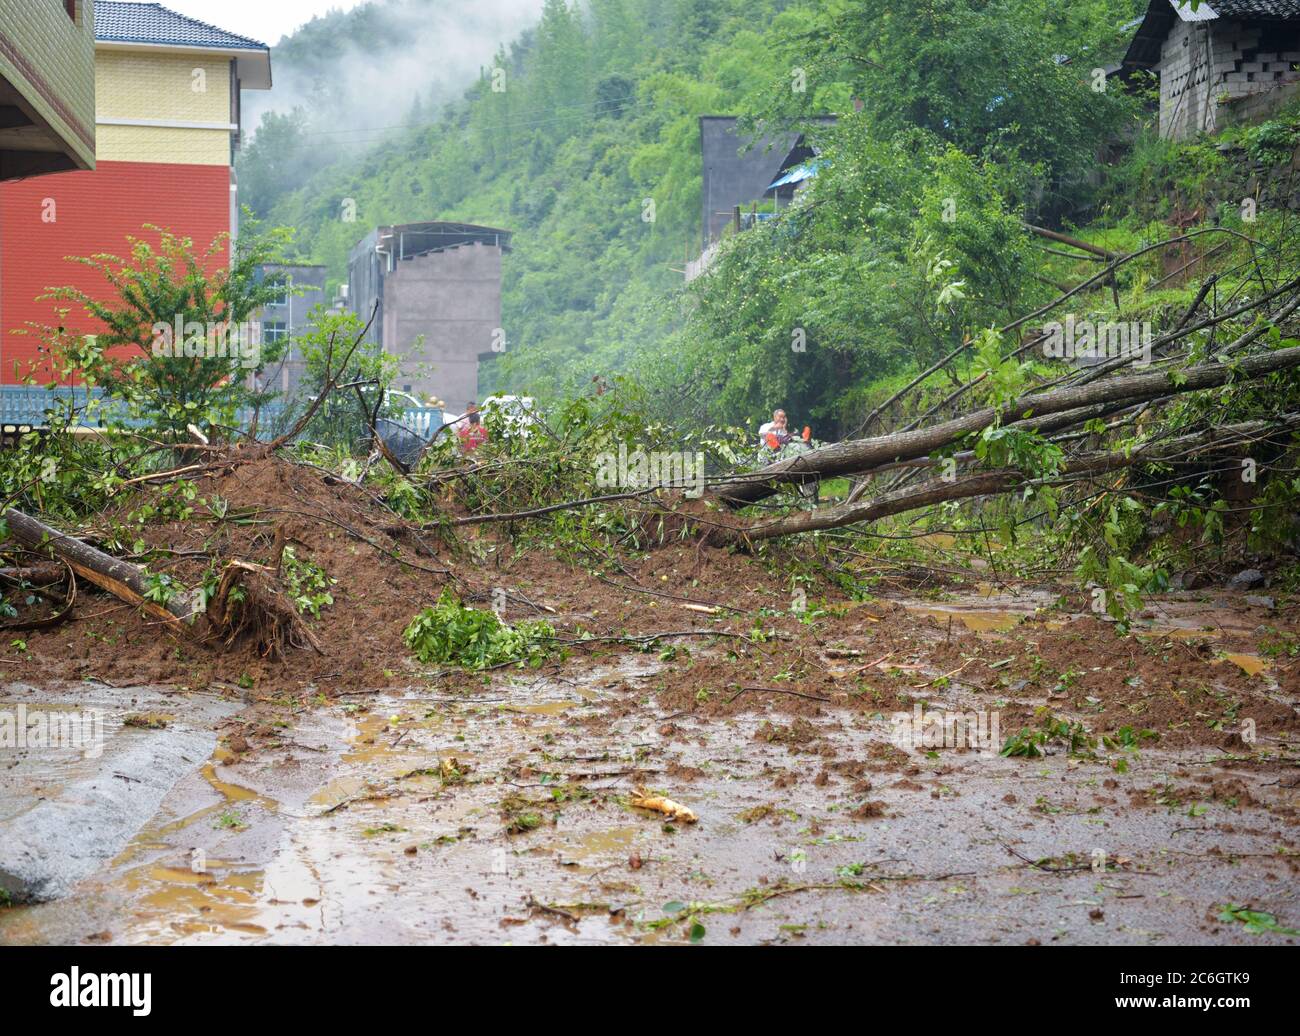 Dopo giorni di tempesta, la città di Tonggu è stata parzialmente allagata, i campi di mais e le strade principali sono stati danneggiati, che deve essere stato profondo 1 metro, Youyang Co Foto Stock